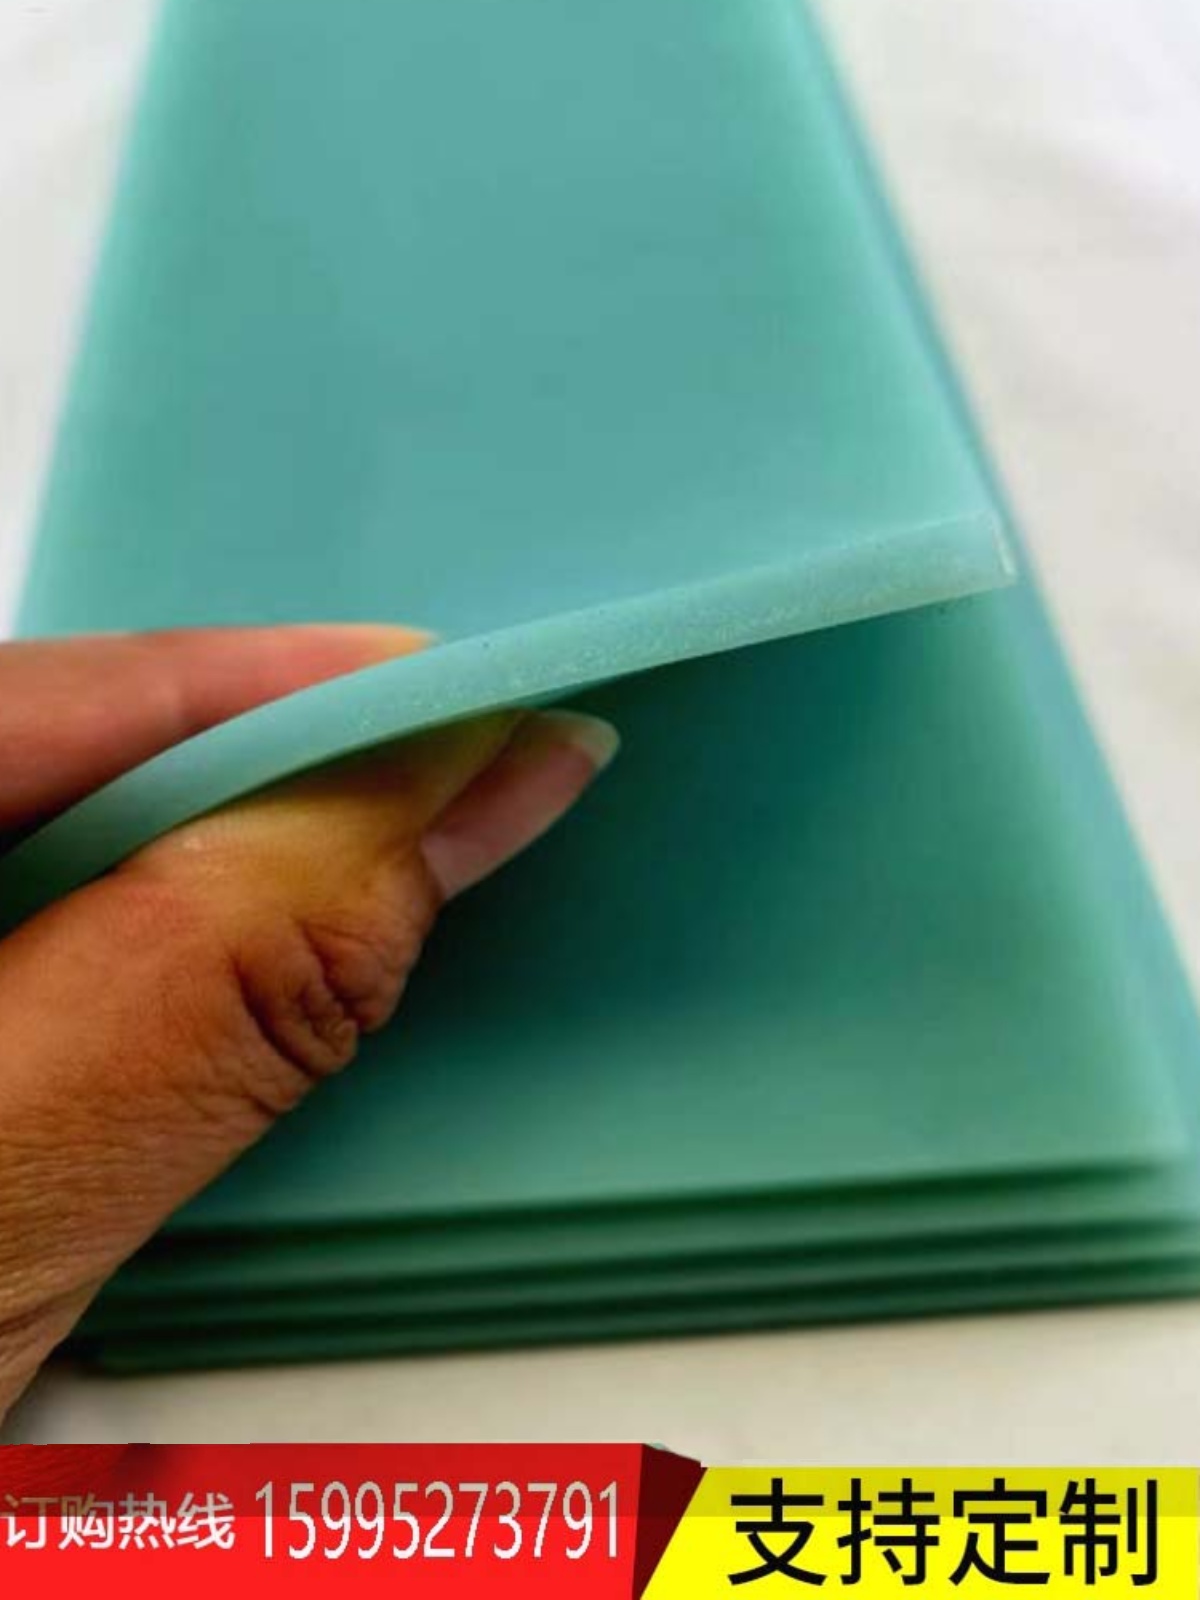 制袋机硅胶板3/5mm硬度高平耐磨抗压封边美观绿色可裁切尺寸厂家